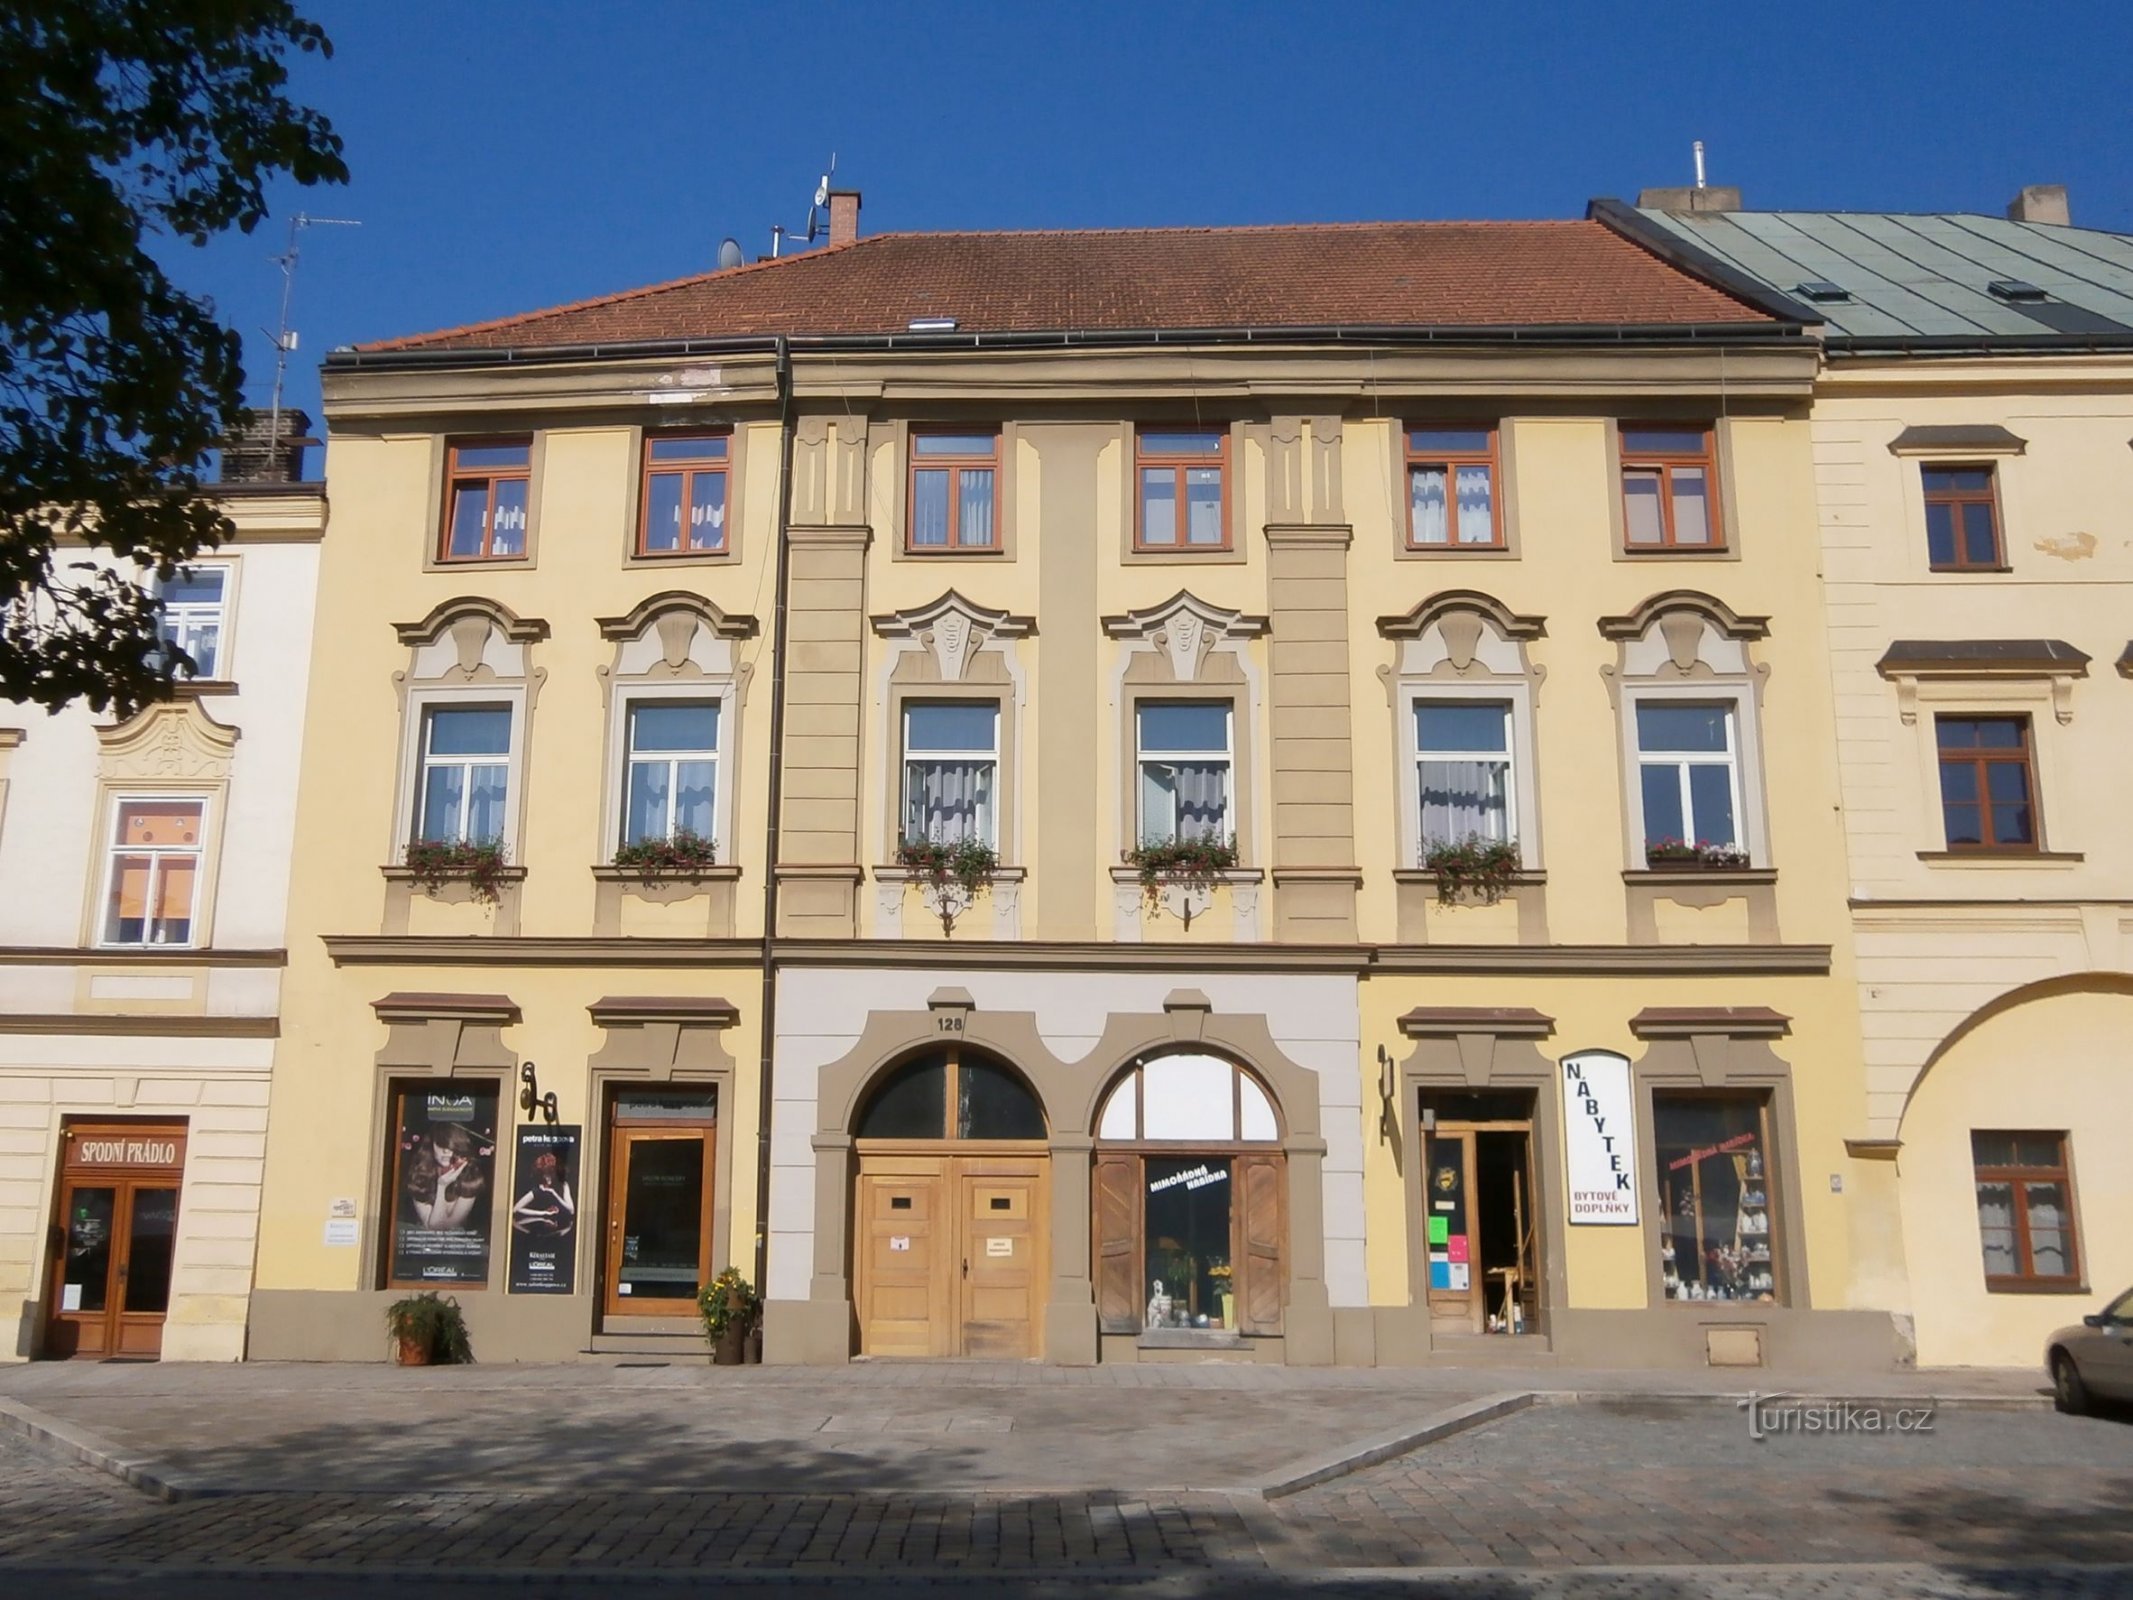 Malé náměstí no. 128 (Hradec Králové, 9.7.2013. huhtikuuta XNUMX)